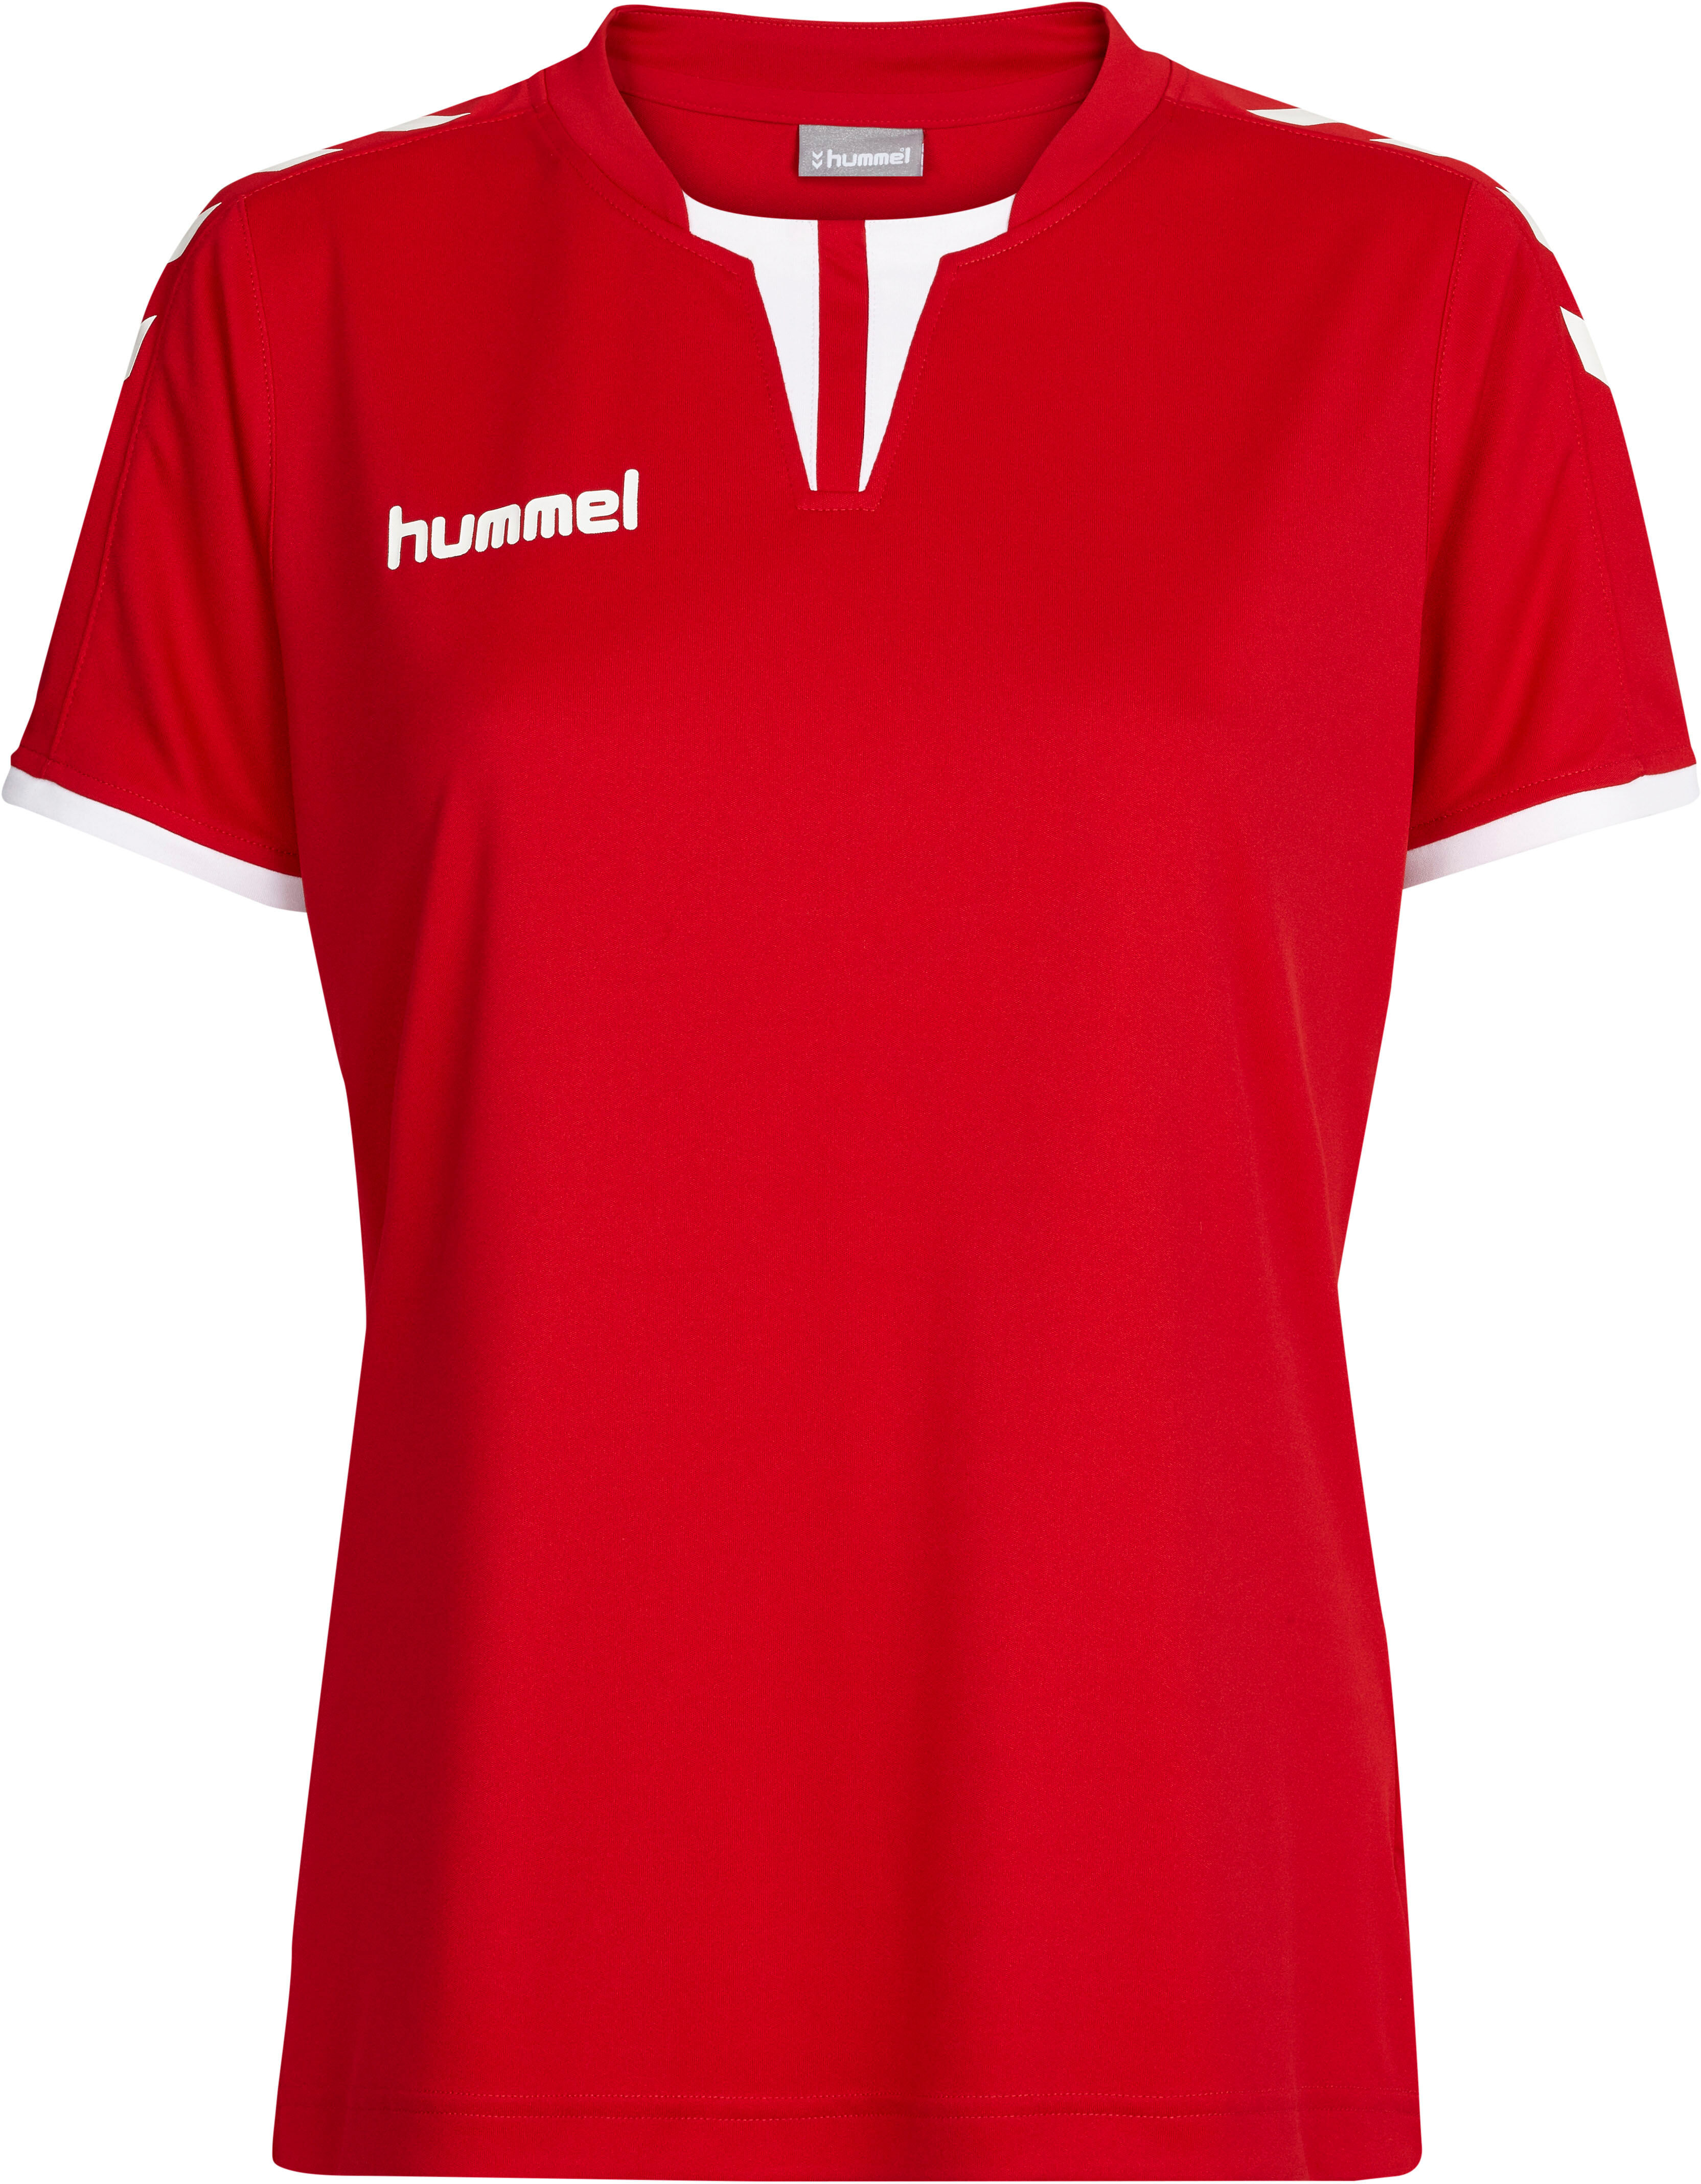 hummel T-Shirt »CORE WOMENS SHORTSLEEVE JERSEY« rot Größe L M S XL XS XXL